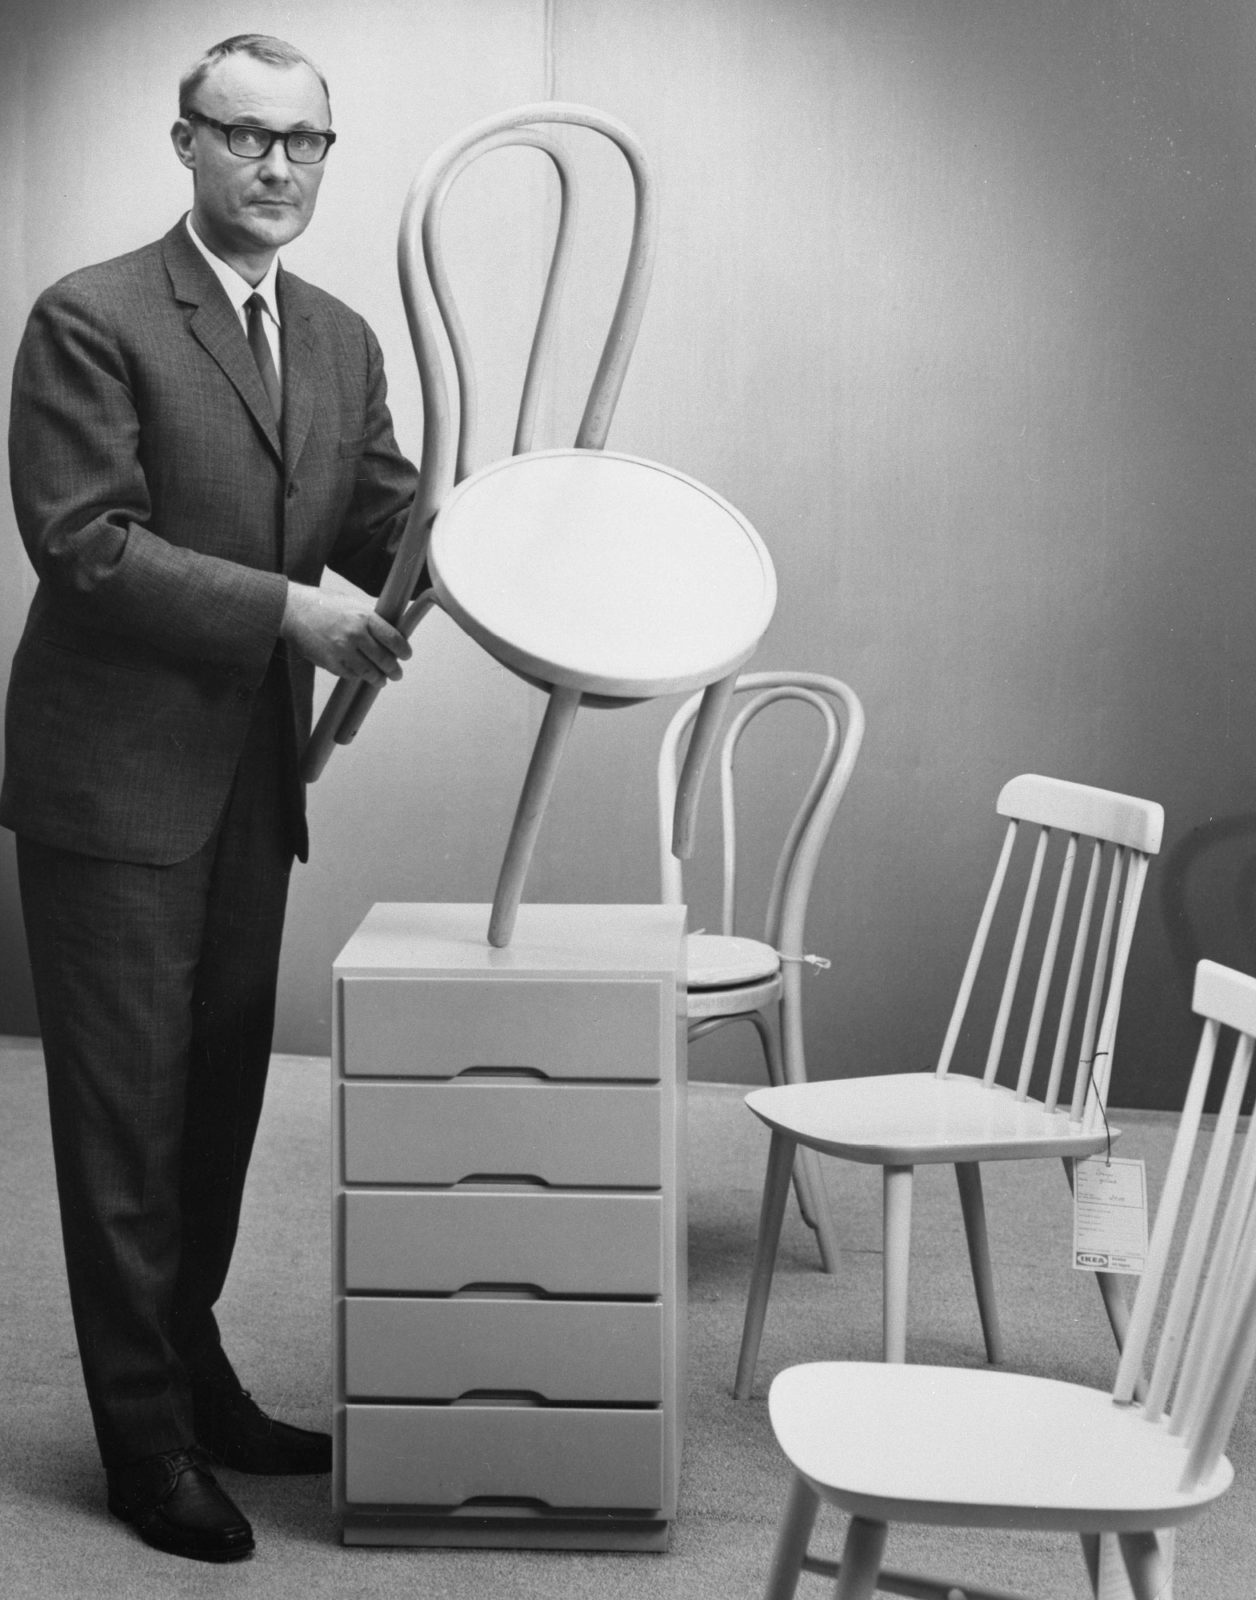 Ingvar Kamprad som håller upp vit stol ÖGLAN, bredvid 2 vita pinnstolar och vit hurts.